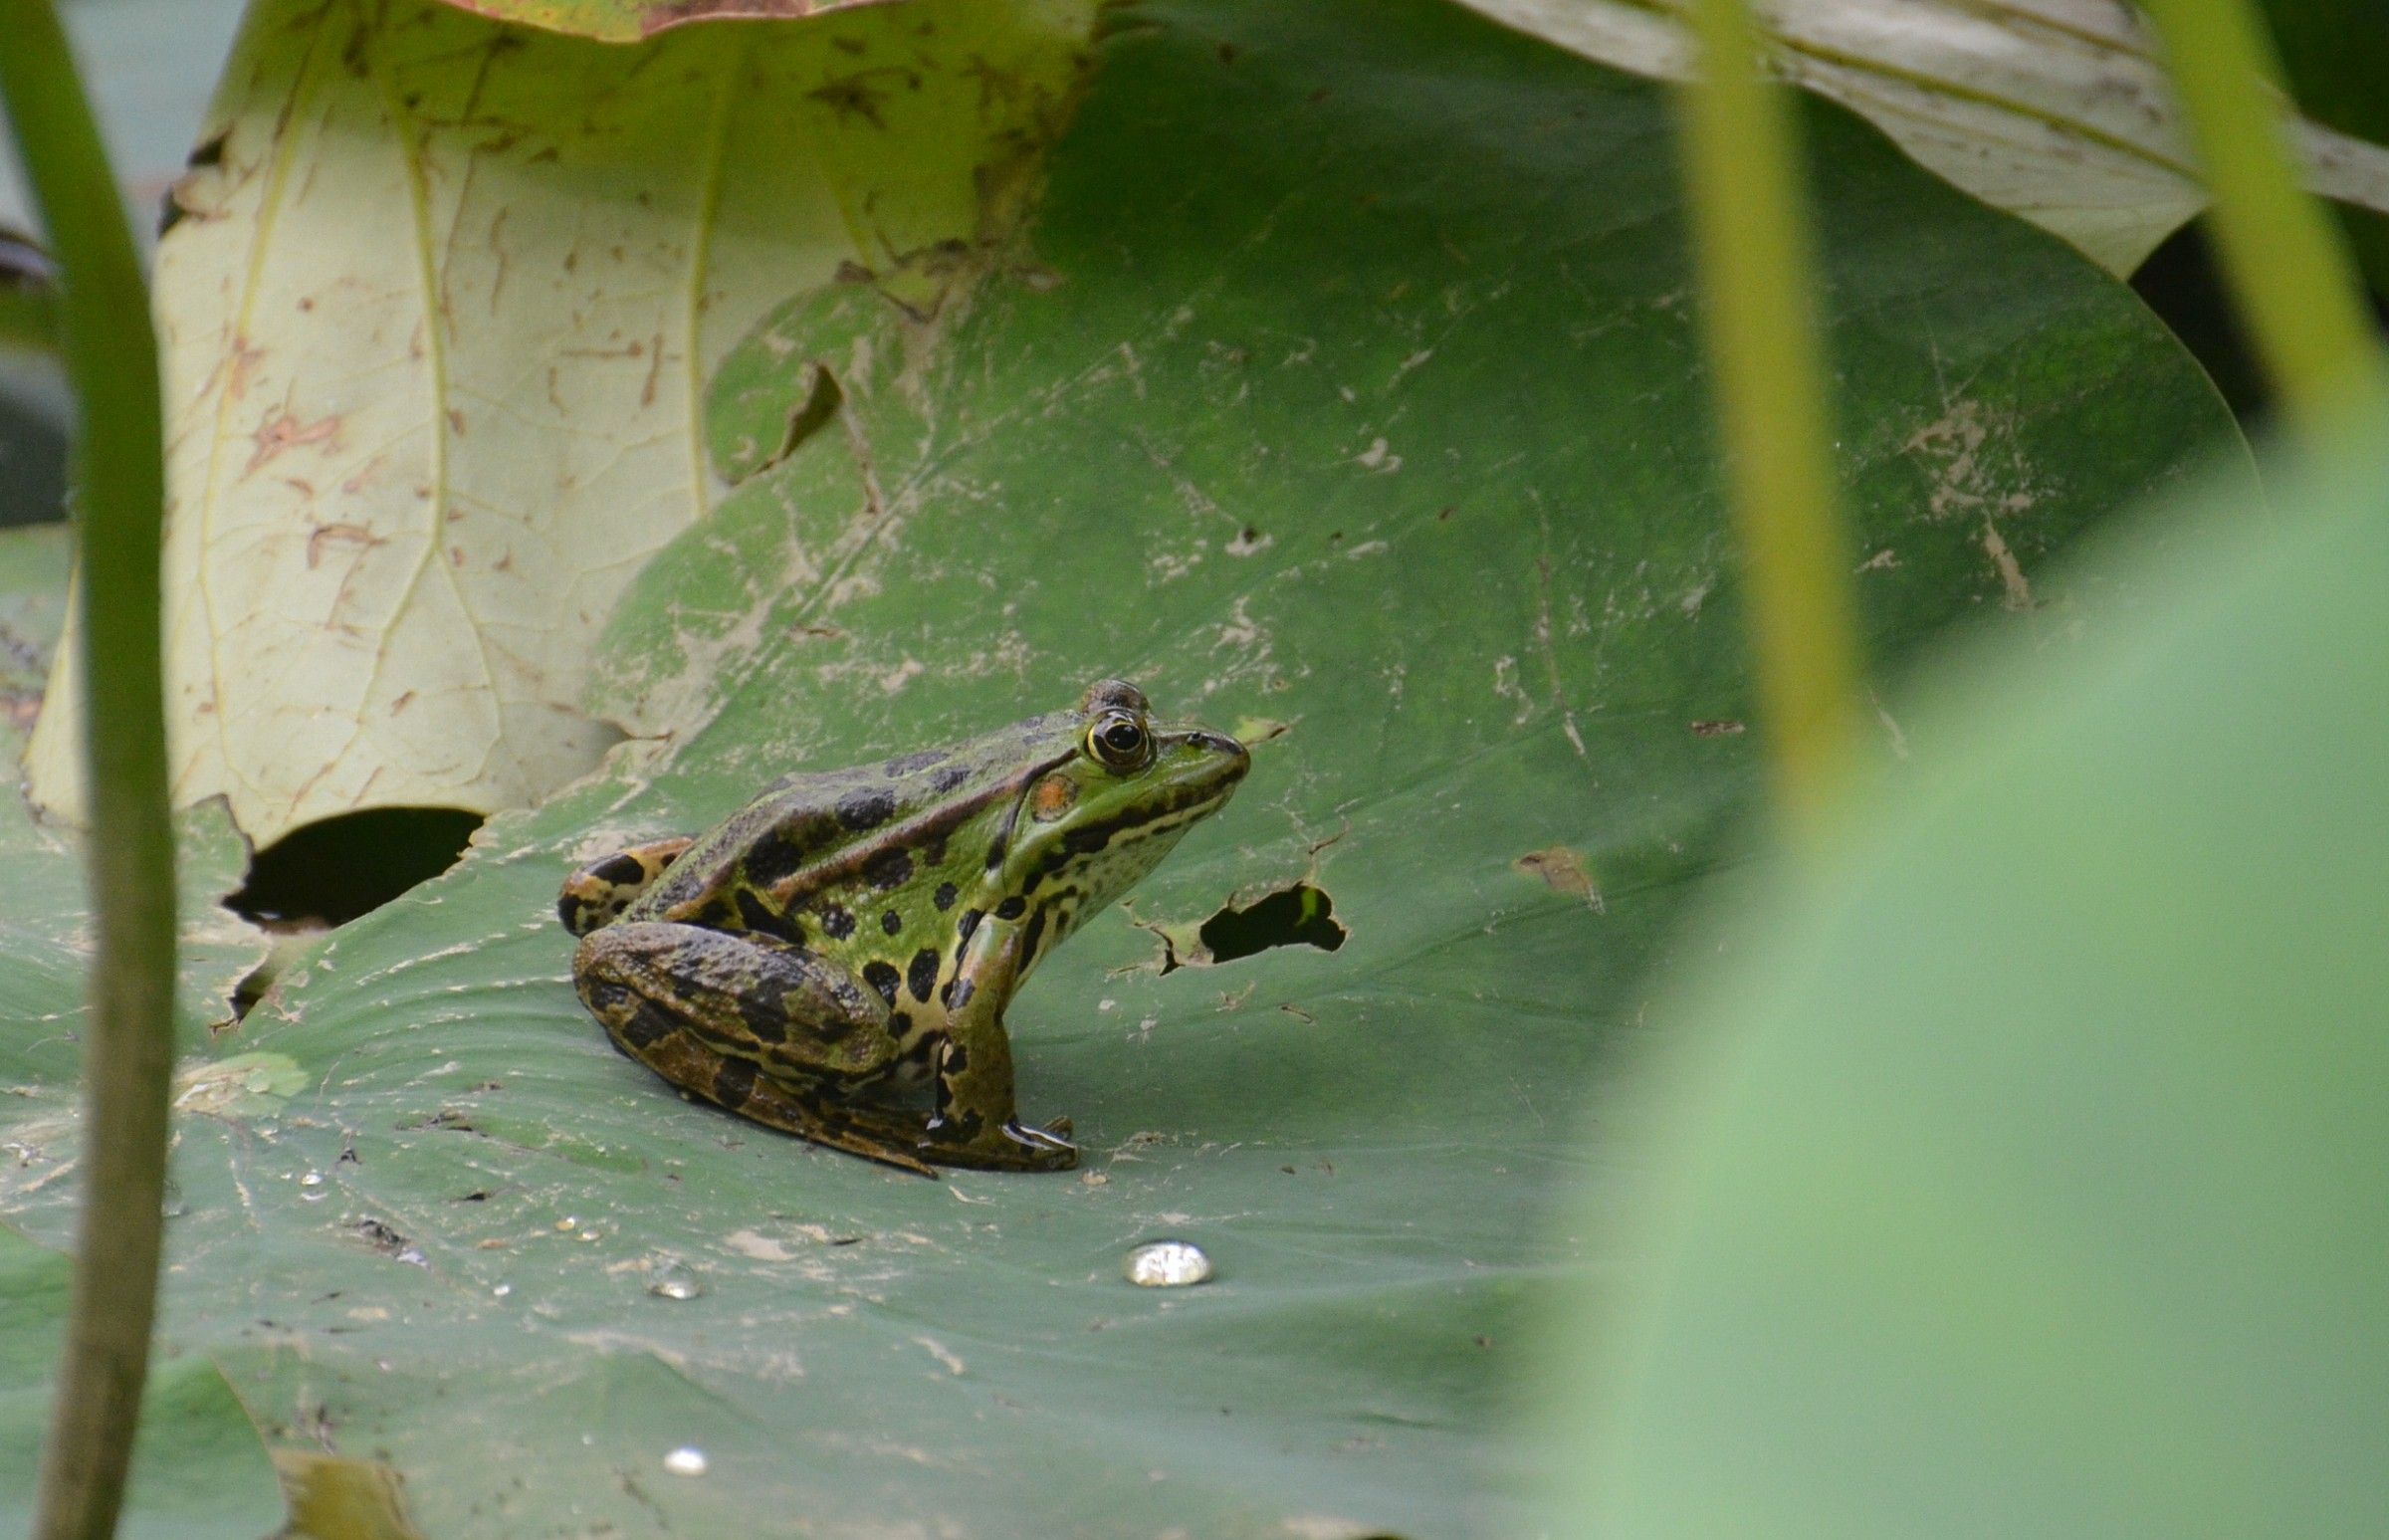 Frog on a lotus leaf...